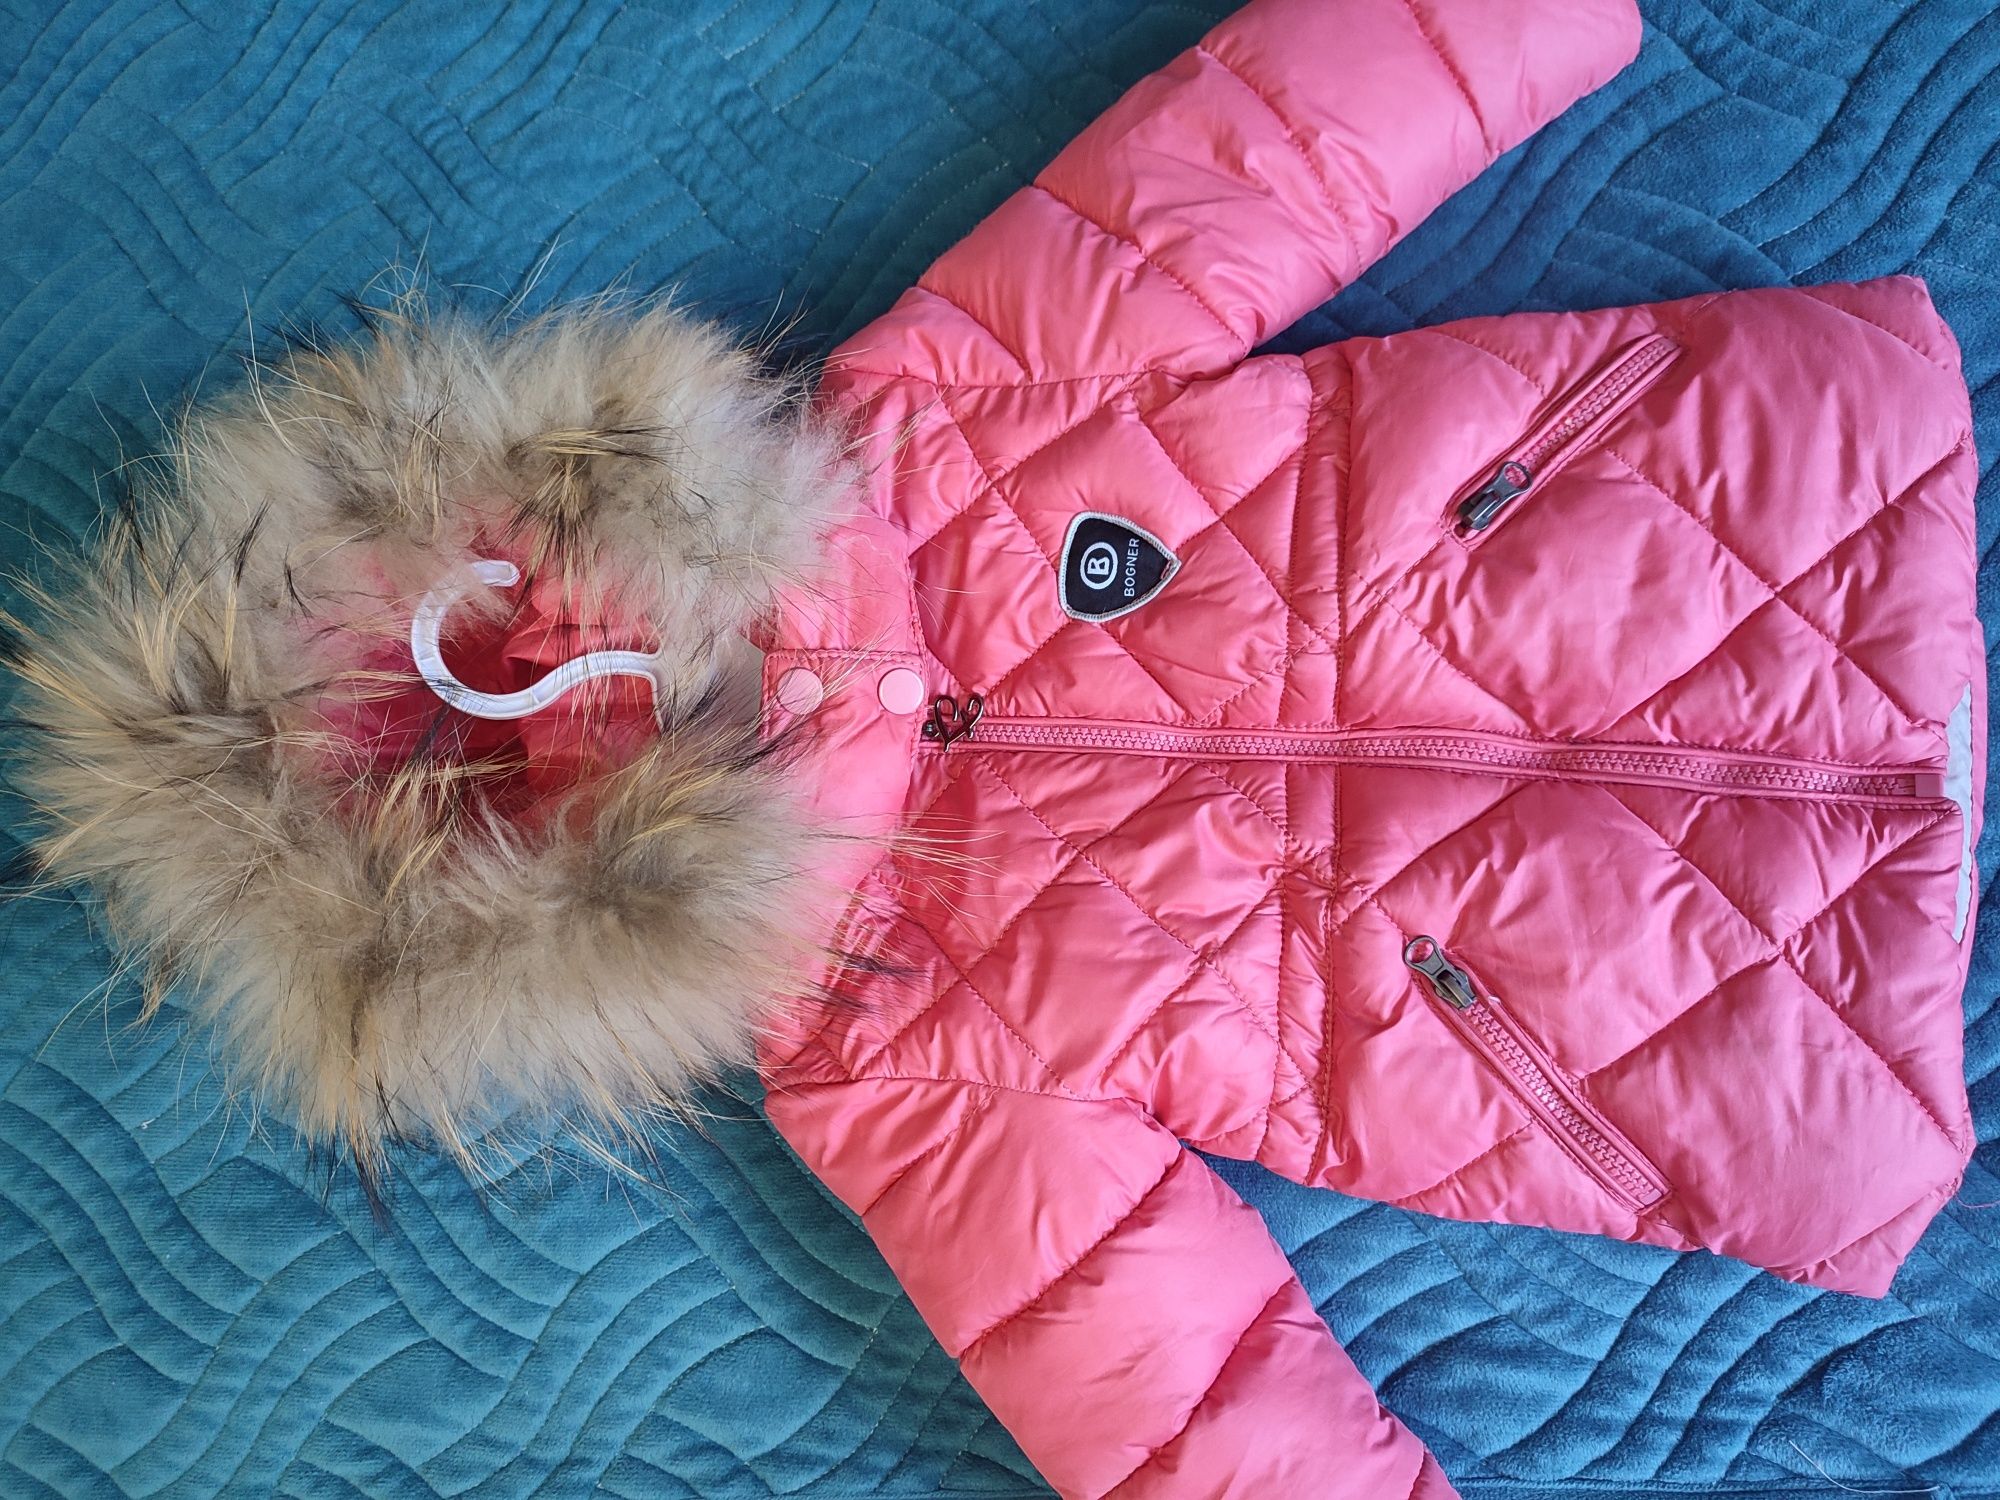 Зимняя детская куртка